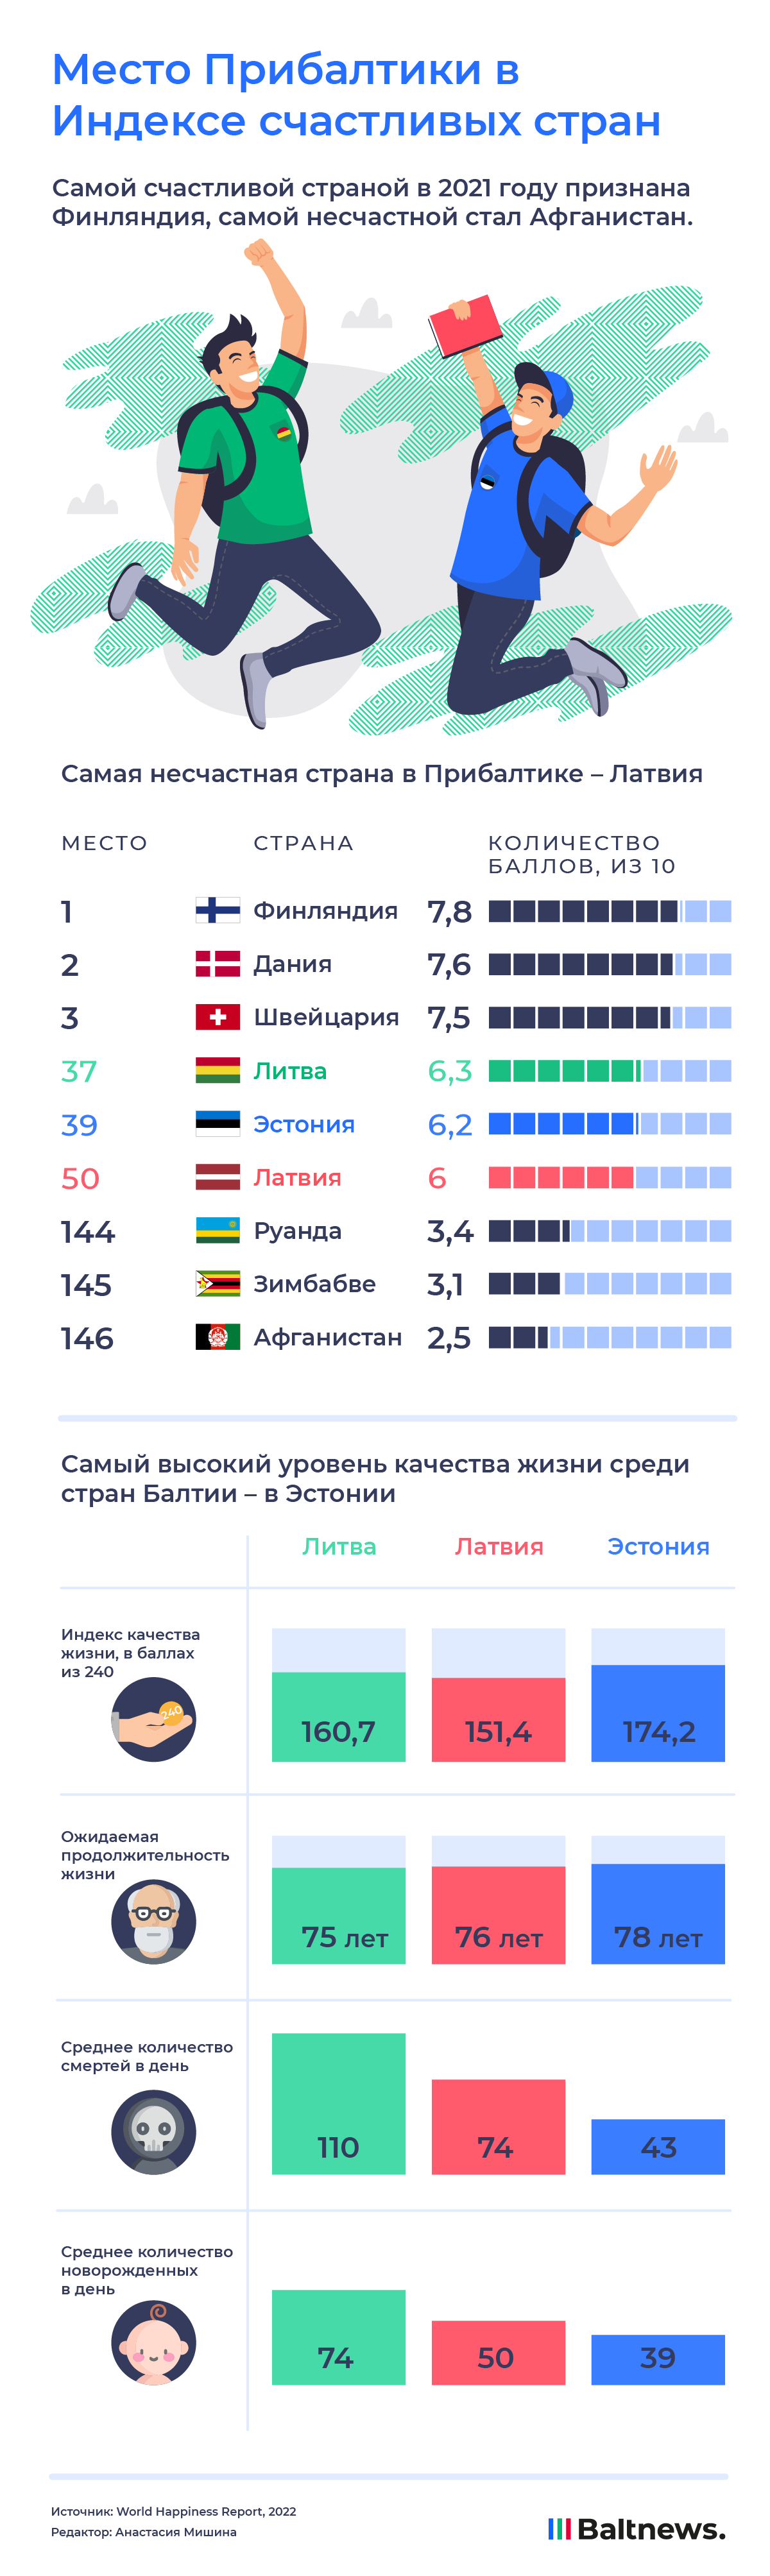 Индекс счастливых стран 2021